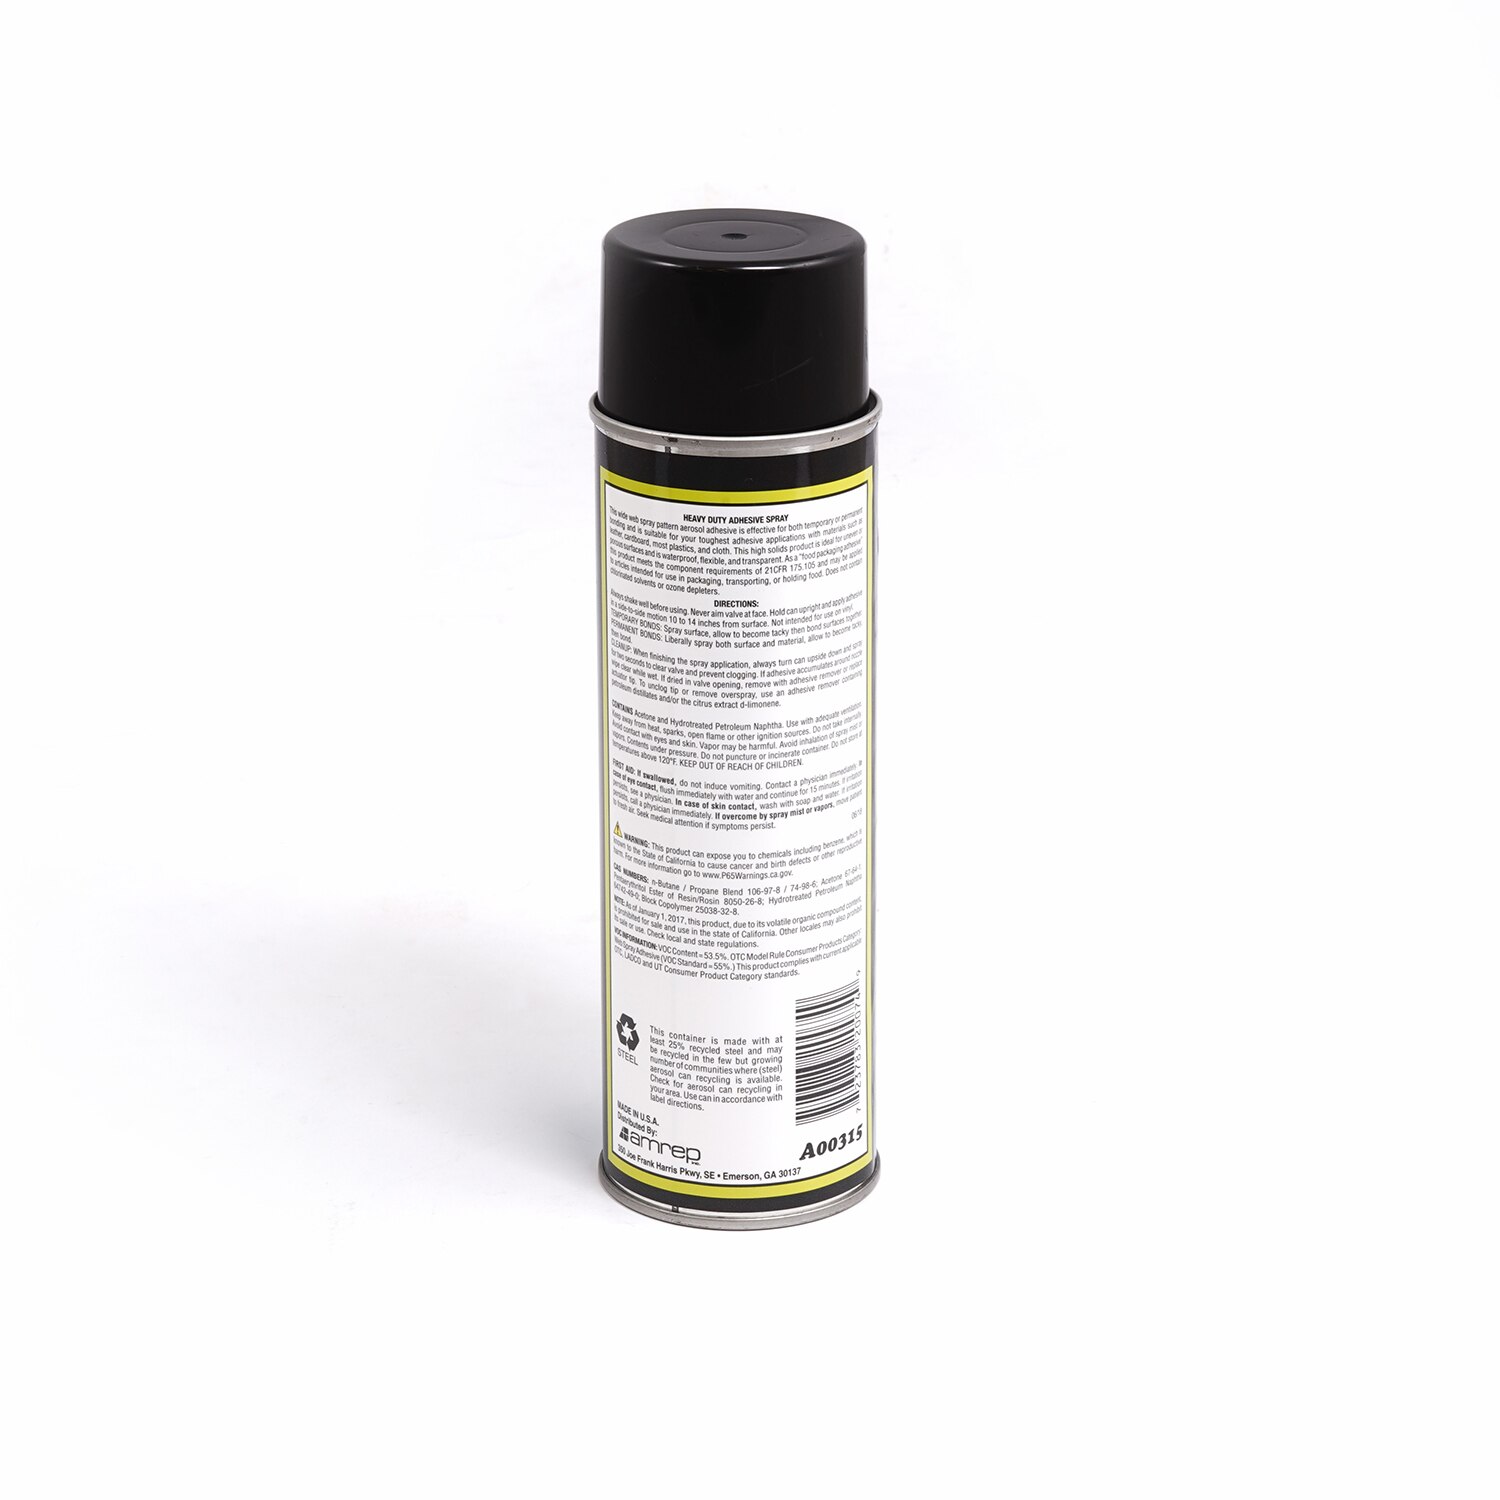 MISTY LV Foam & Fabric Adhesive Spray #315 Heavy Duty 12-oz Aerosol Can  (DISC)